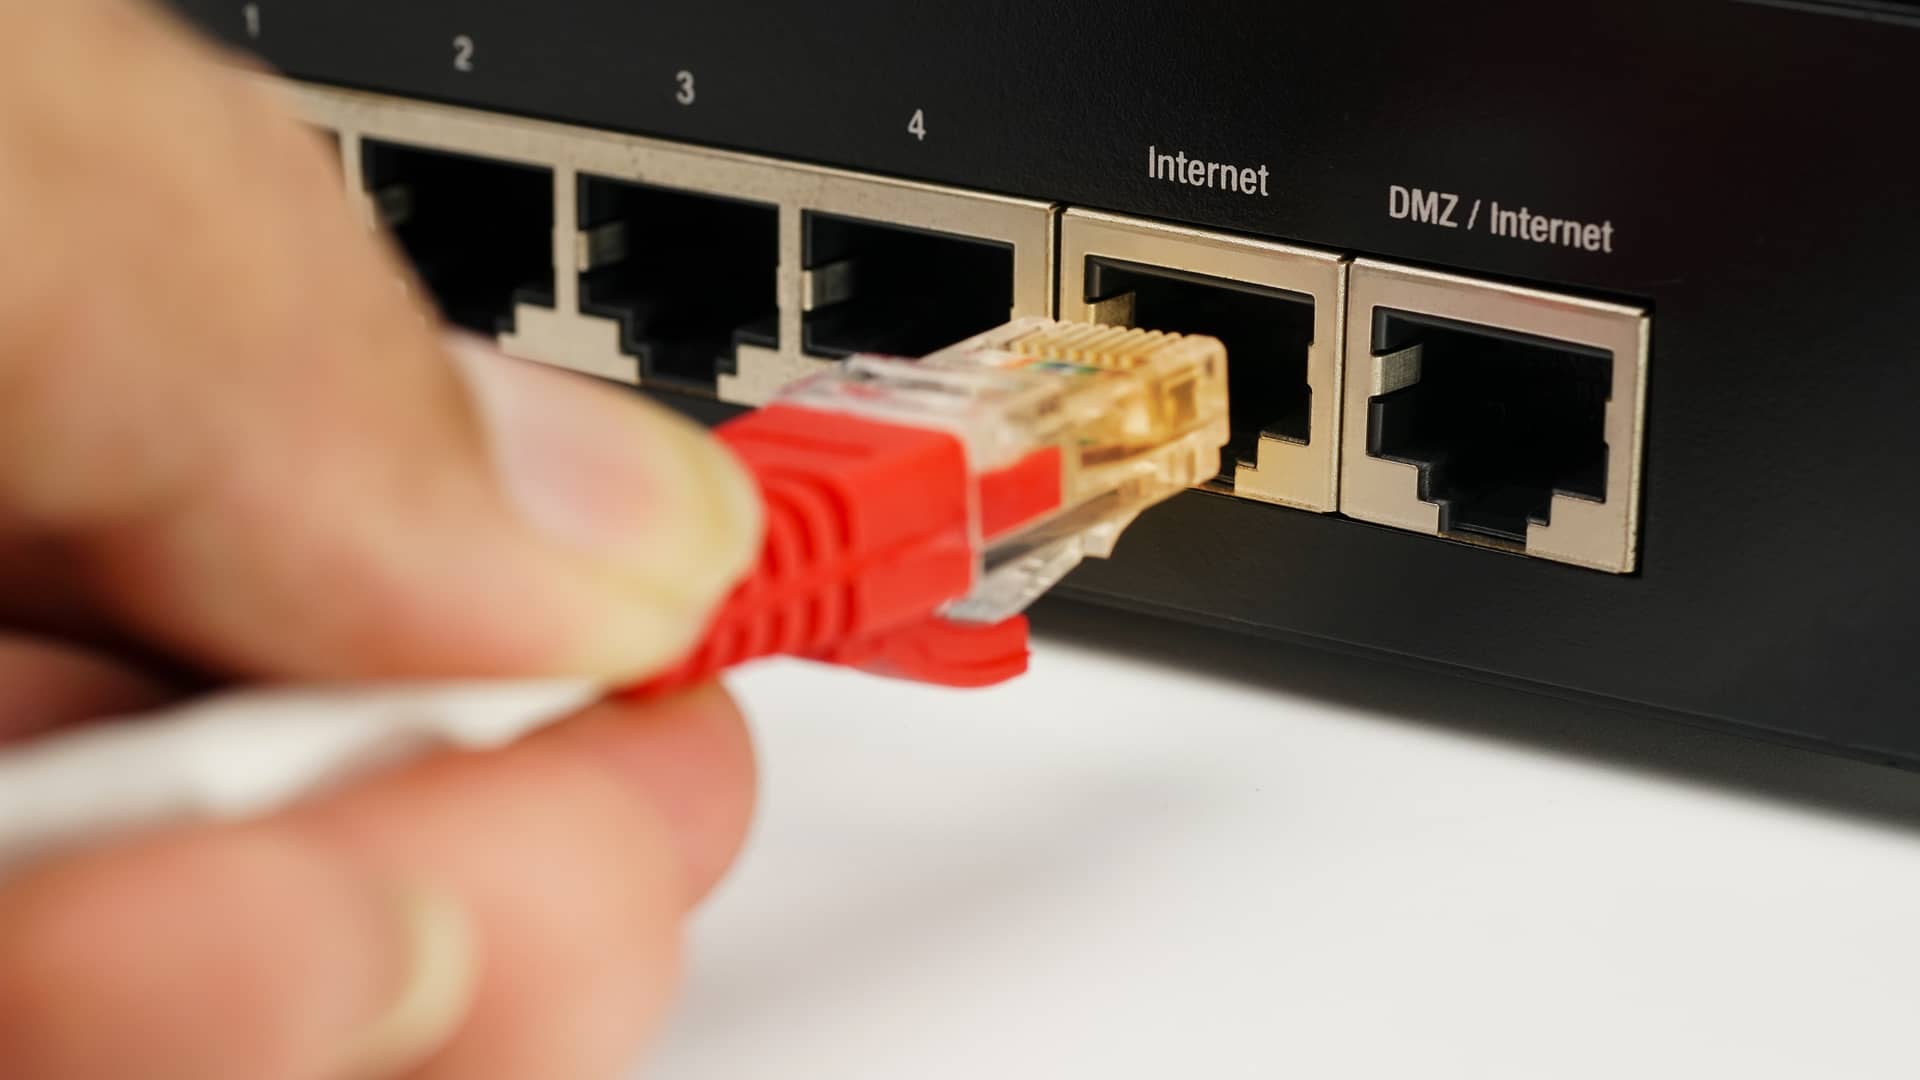 Persona conectando el cable ethernet a su router pepephone para disfrutar de su tarifa de internet adsl